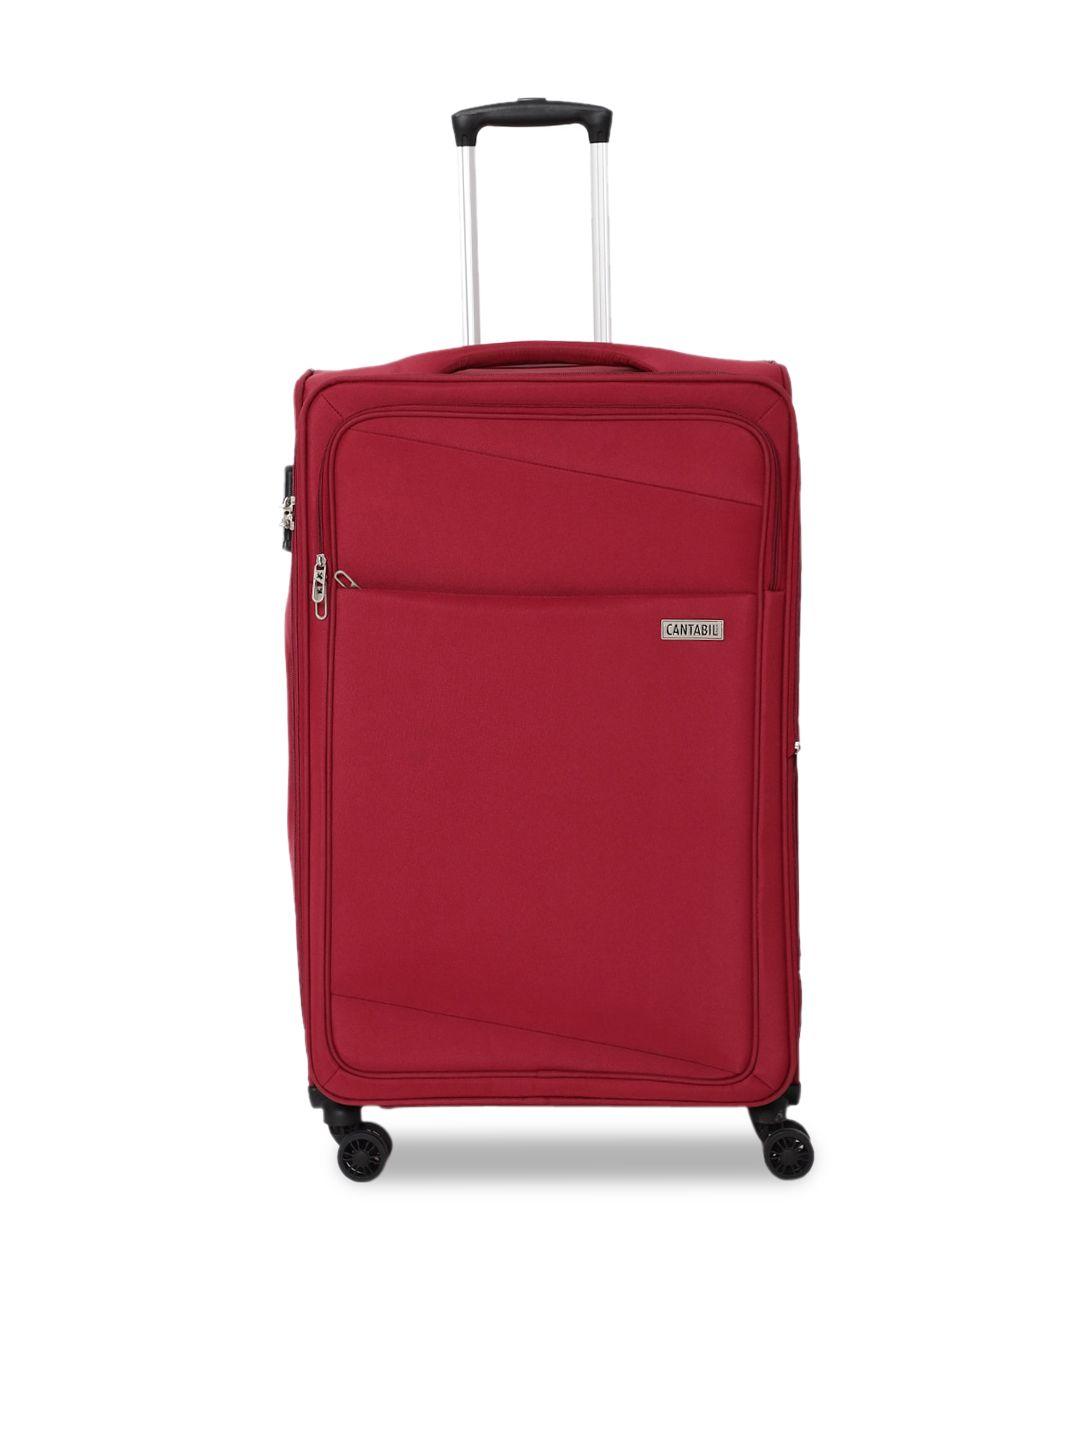 cantabil soft-sided medium trolley suitcase